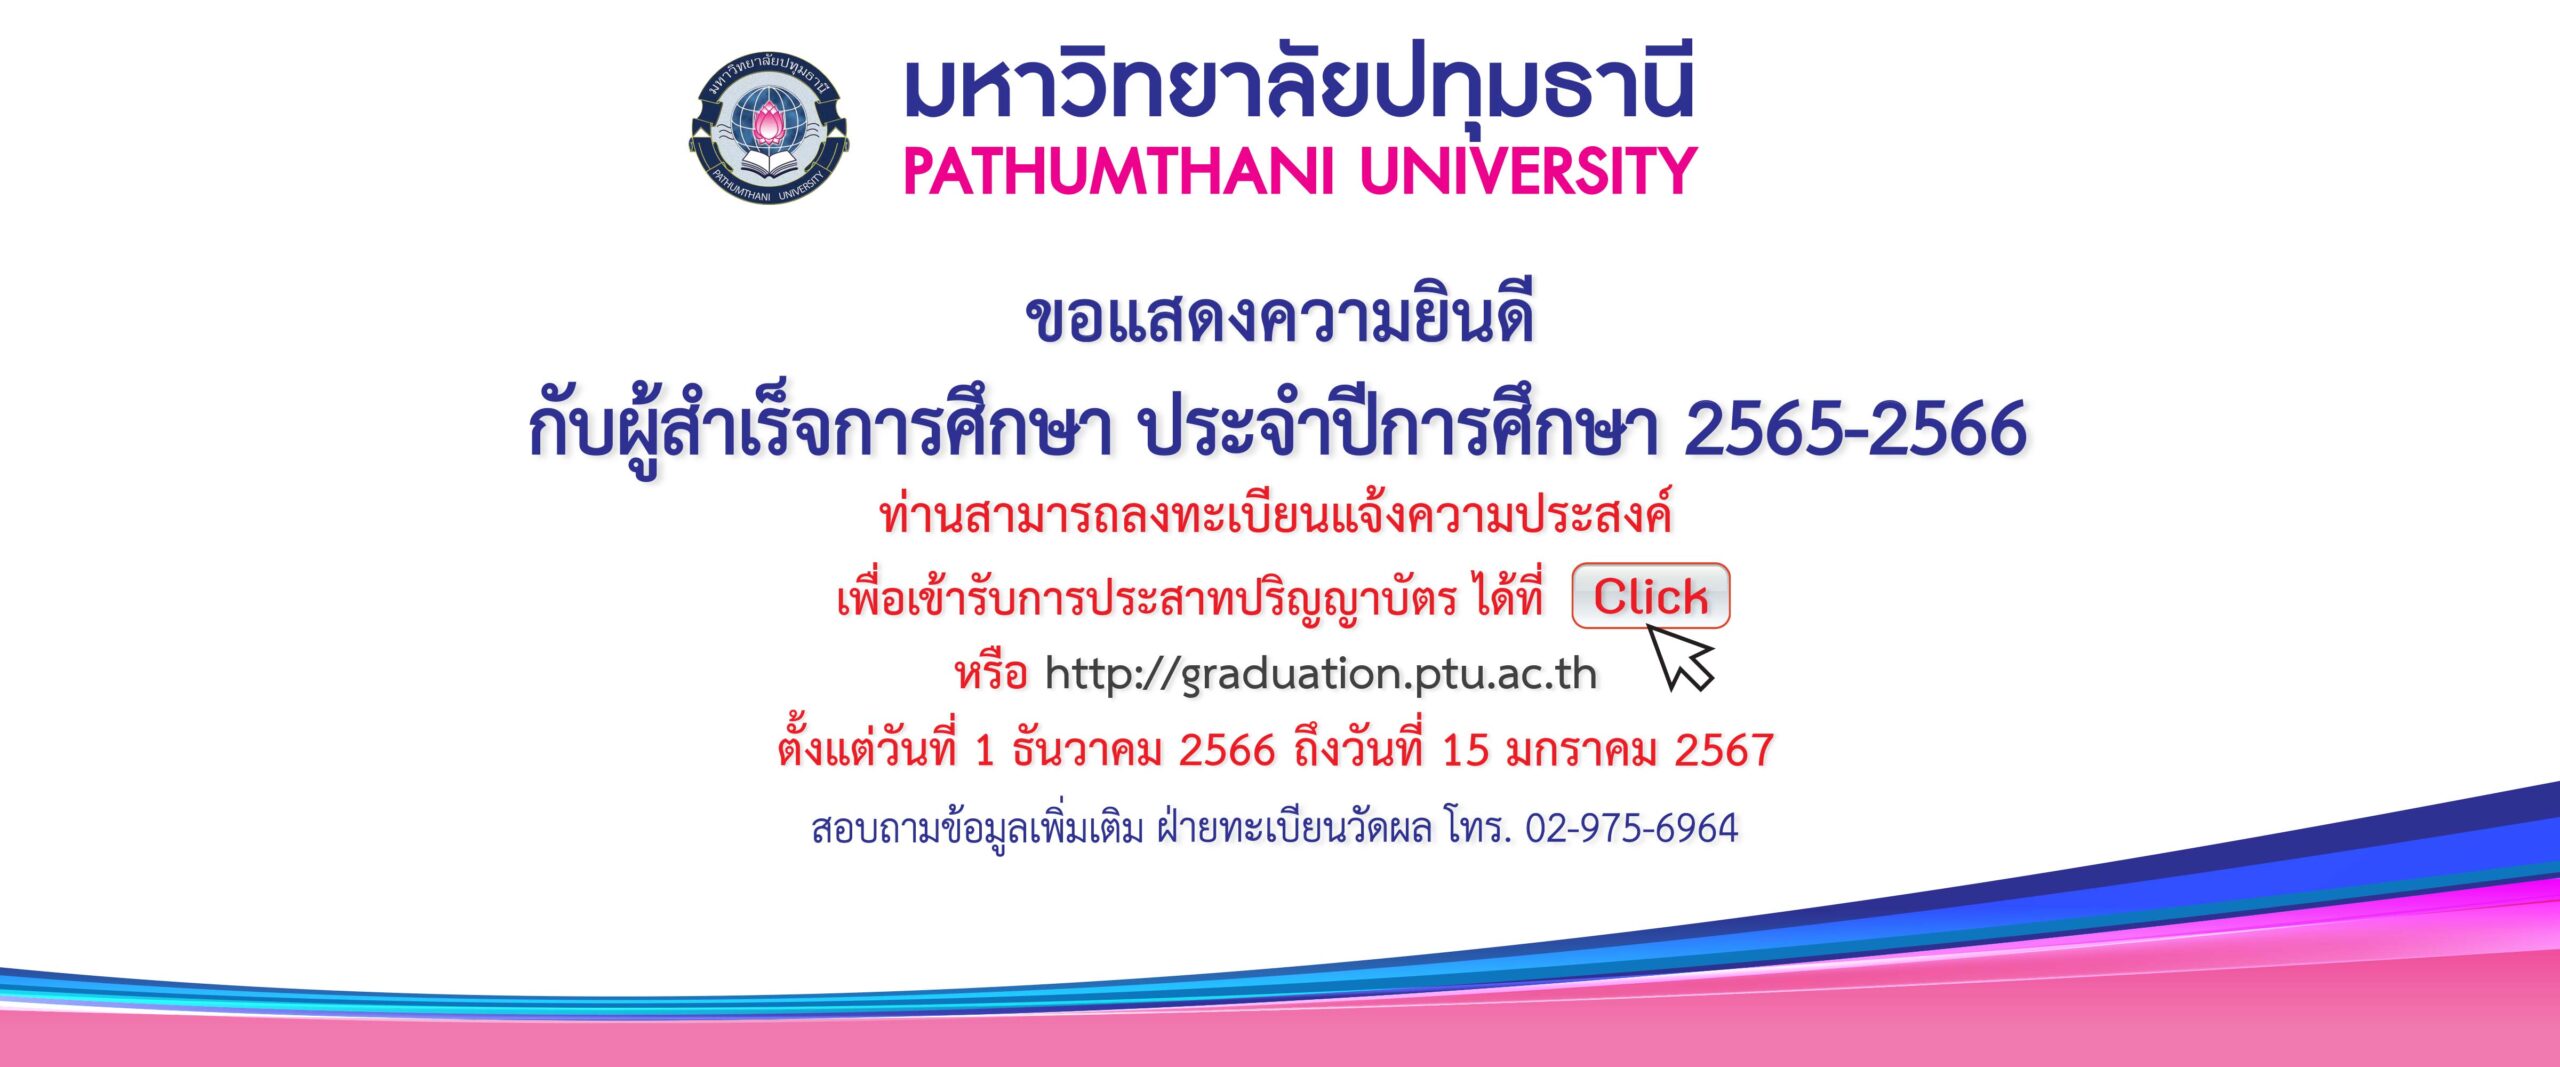 thesis international pathumthani